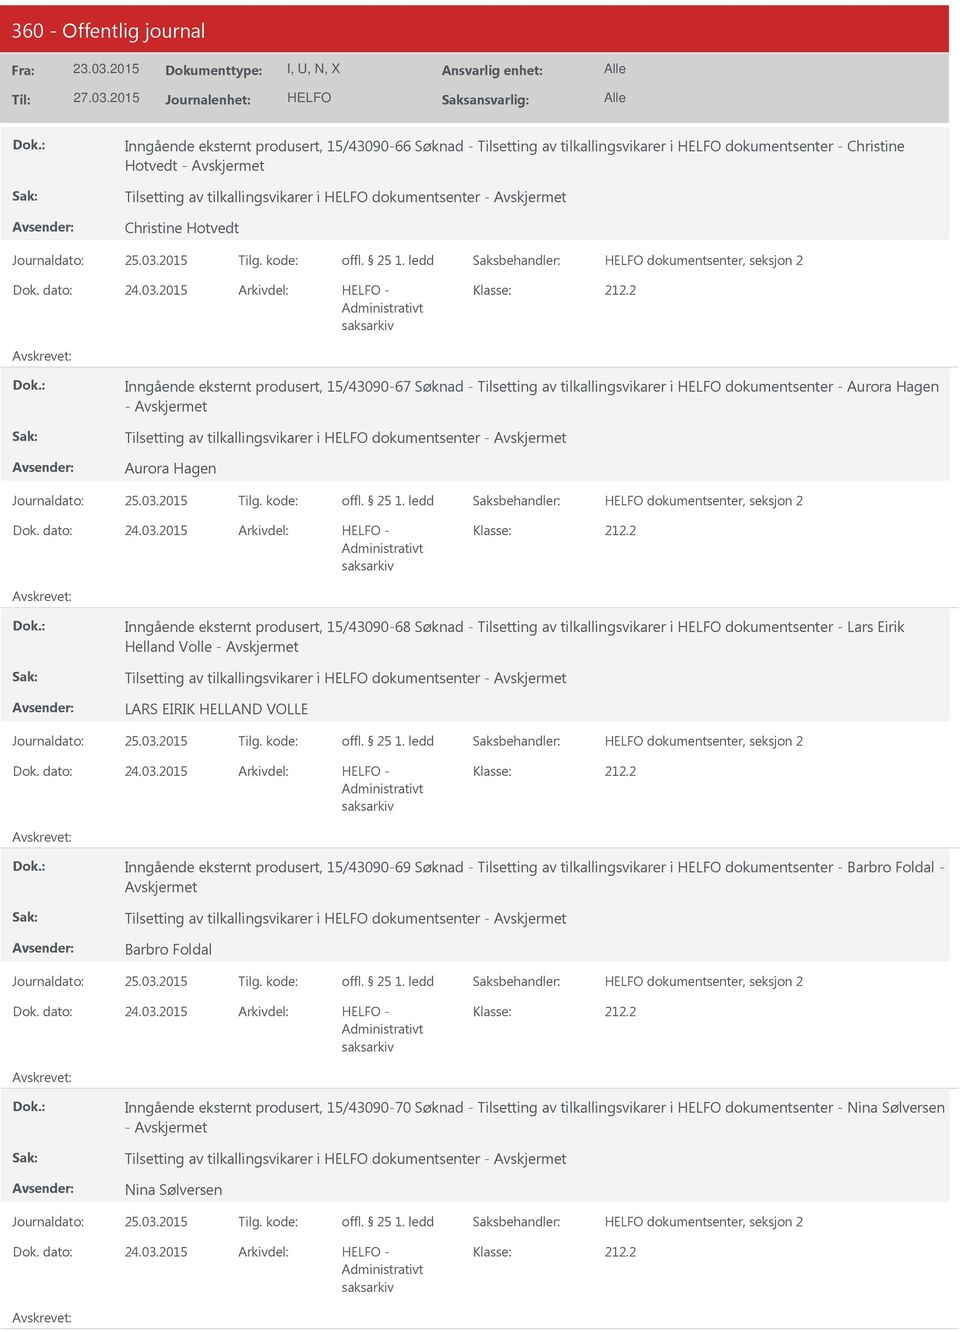 2015 - Inngående eksternt produsert, 15/43090-67 Søknad - Tilsetting av tilkallingsvikarer i dokumentsenter - Aurora Hagen - Tilsetting av tilkallingsvikarer i dokumentsenter - Aurora Hagen